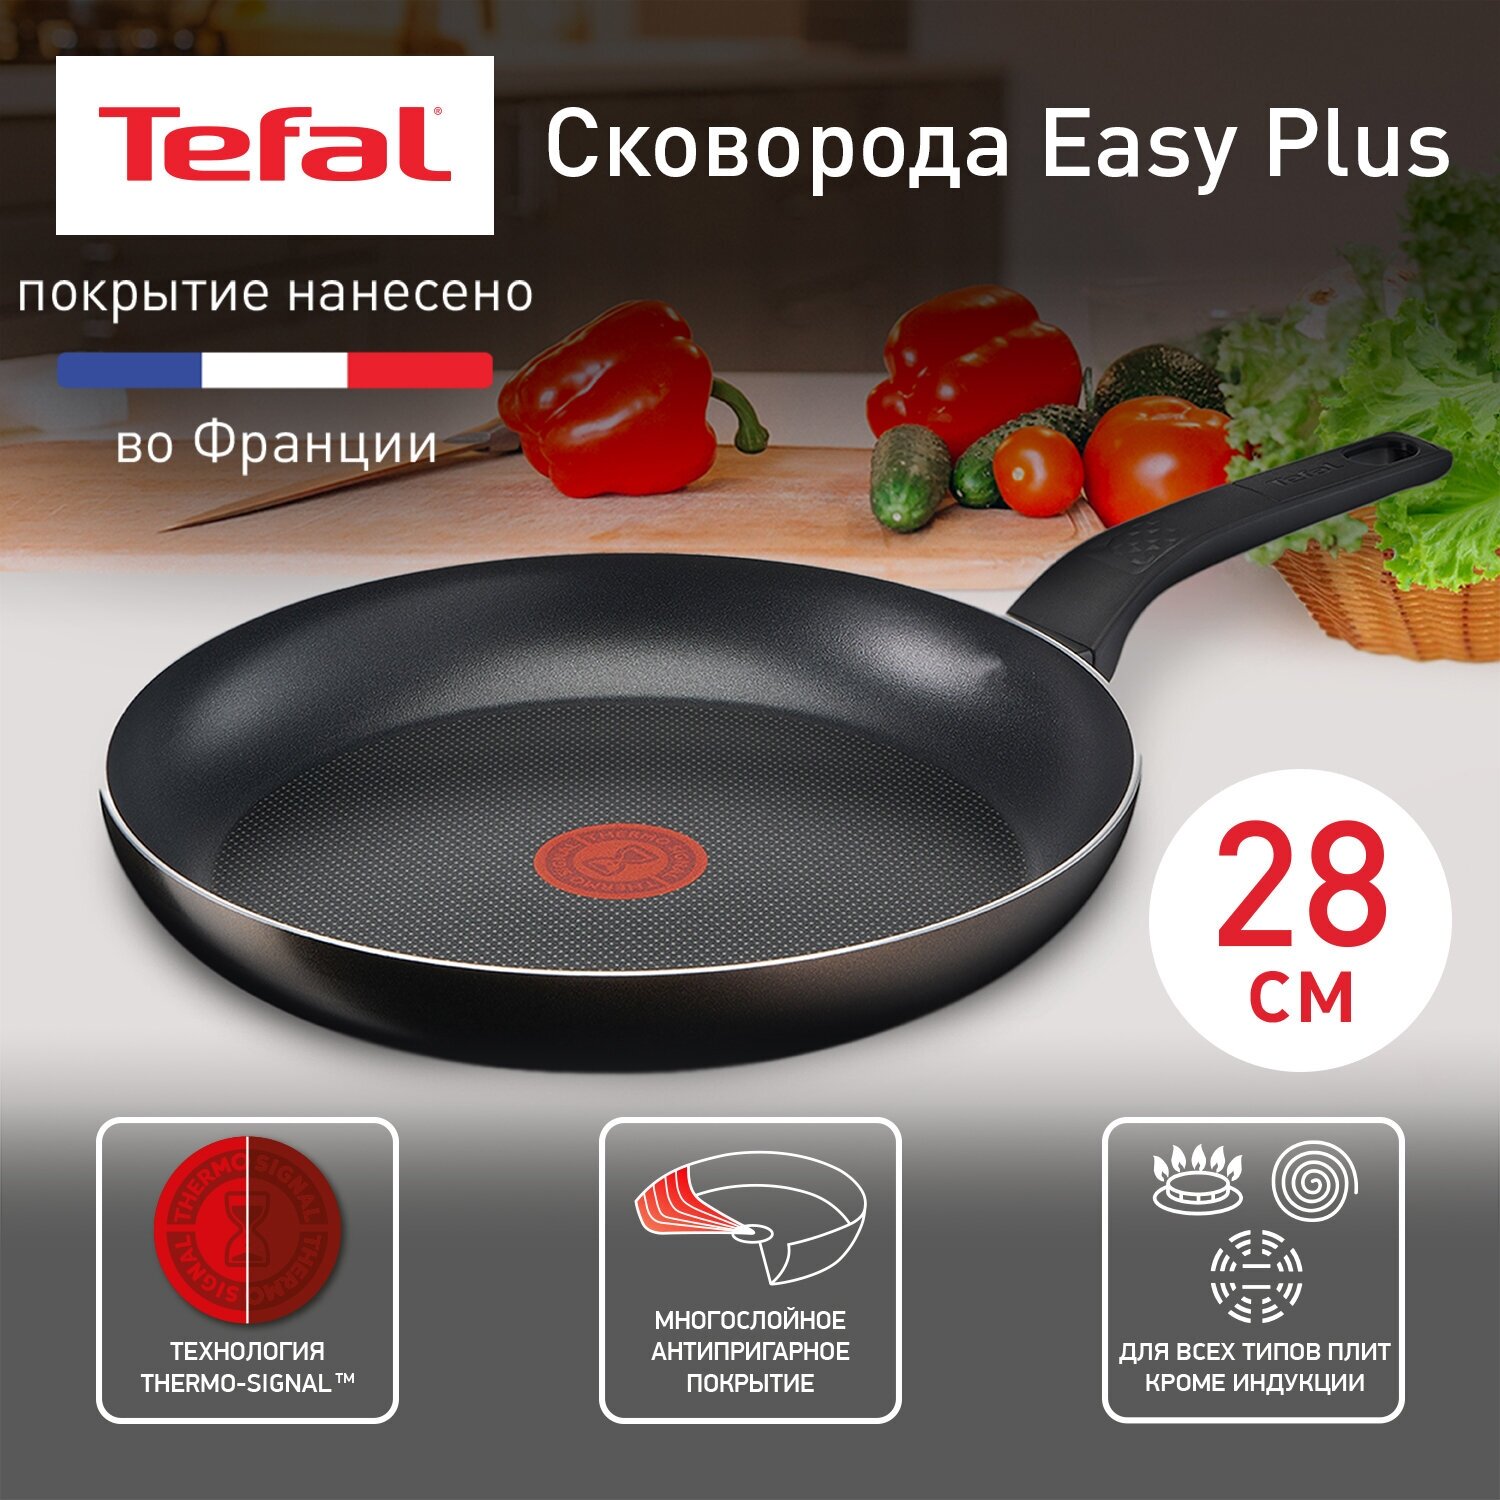 Сковорода Tefal Easy Plus 04237128, диаметр 28 см, с индикатором температуры, с антипригарным покрытием, для газовых, электрических плит